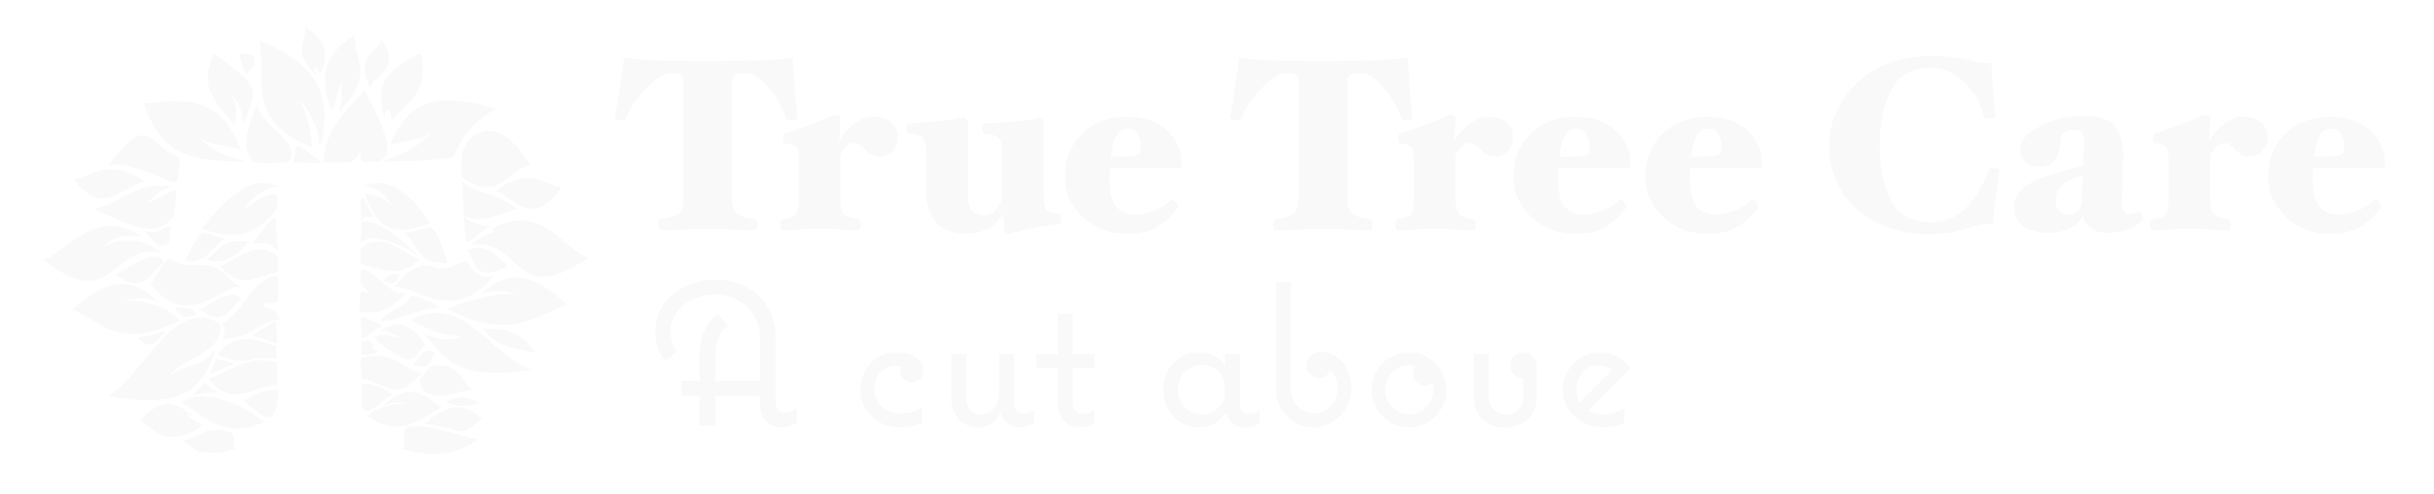 True Tree Care New Logo